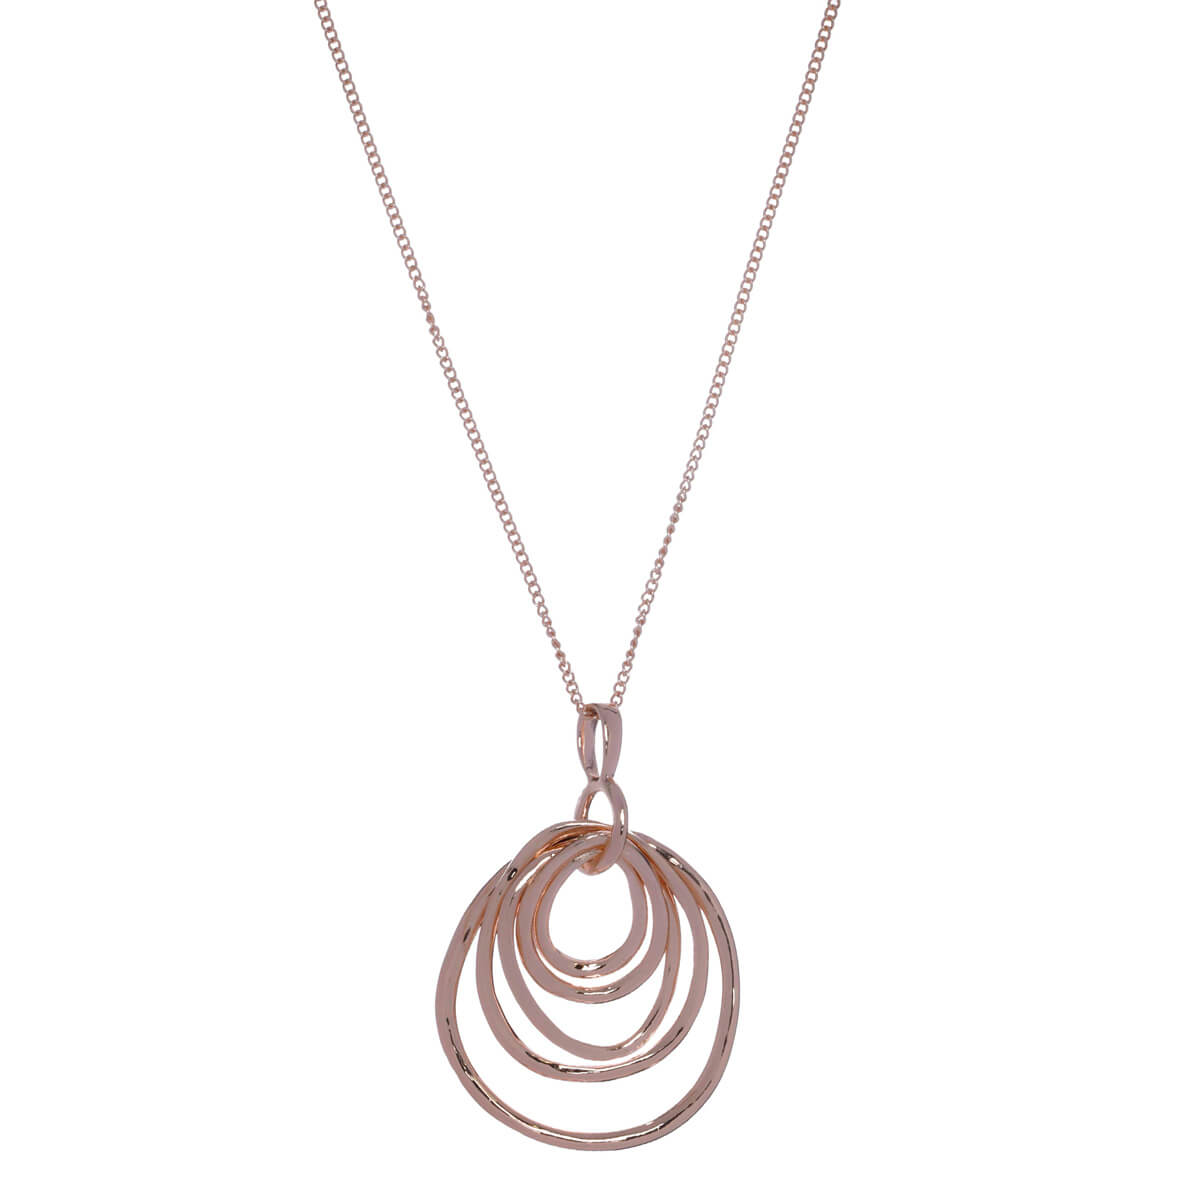 Long pendant necklace 71cm +7cm